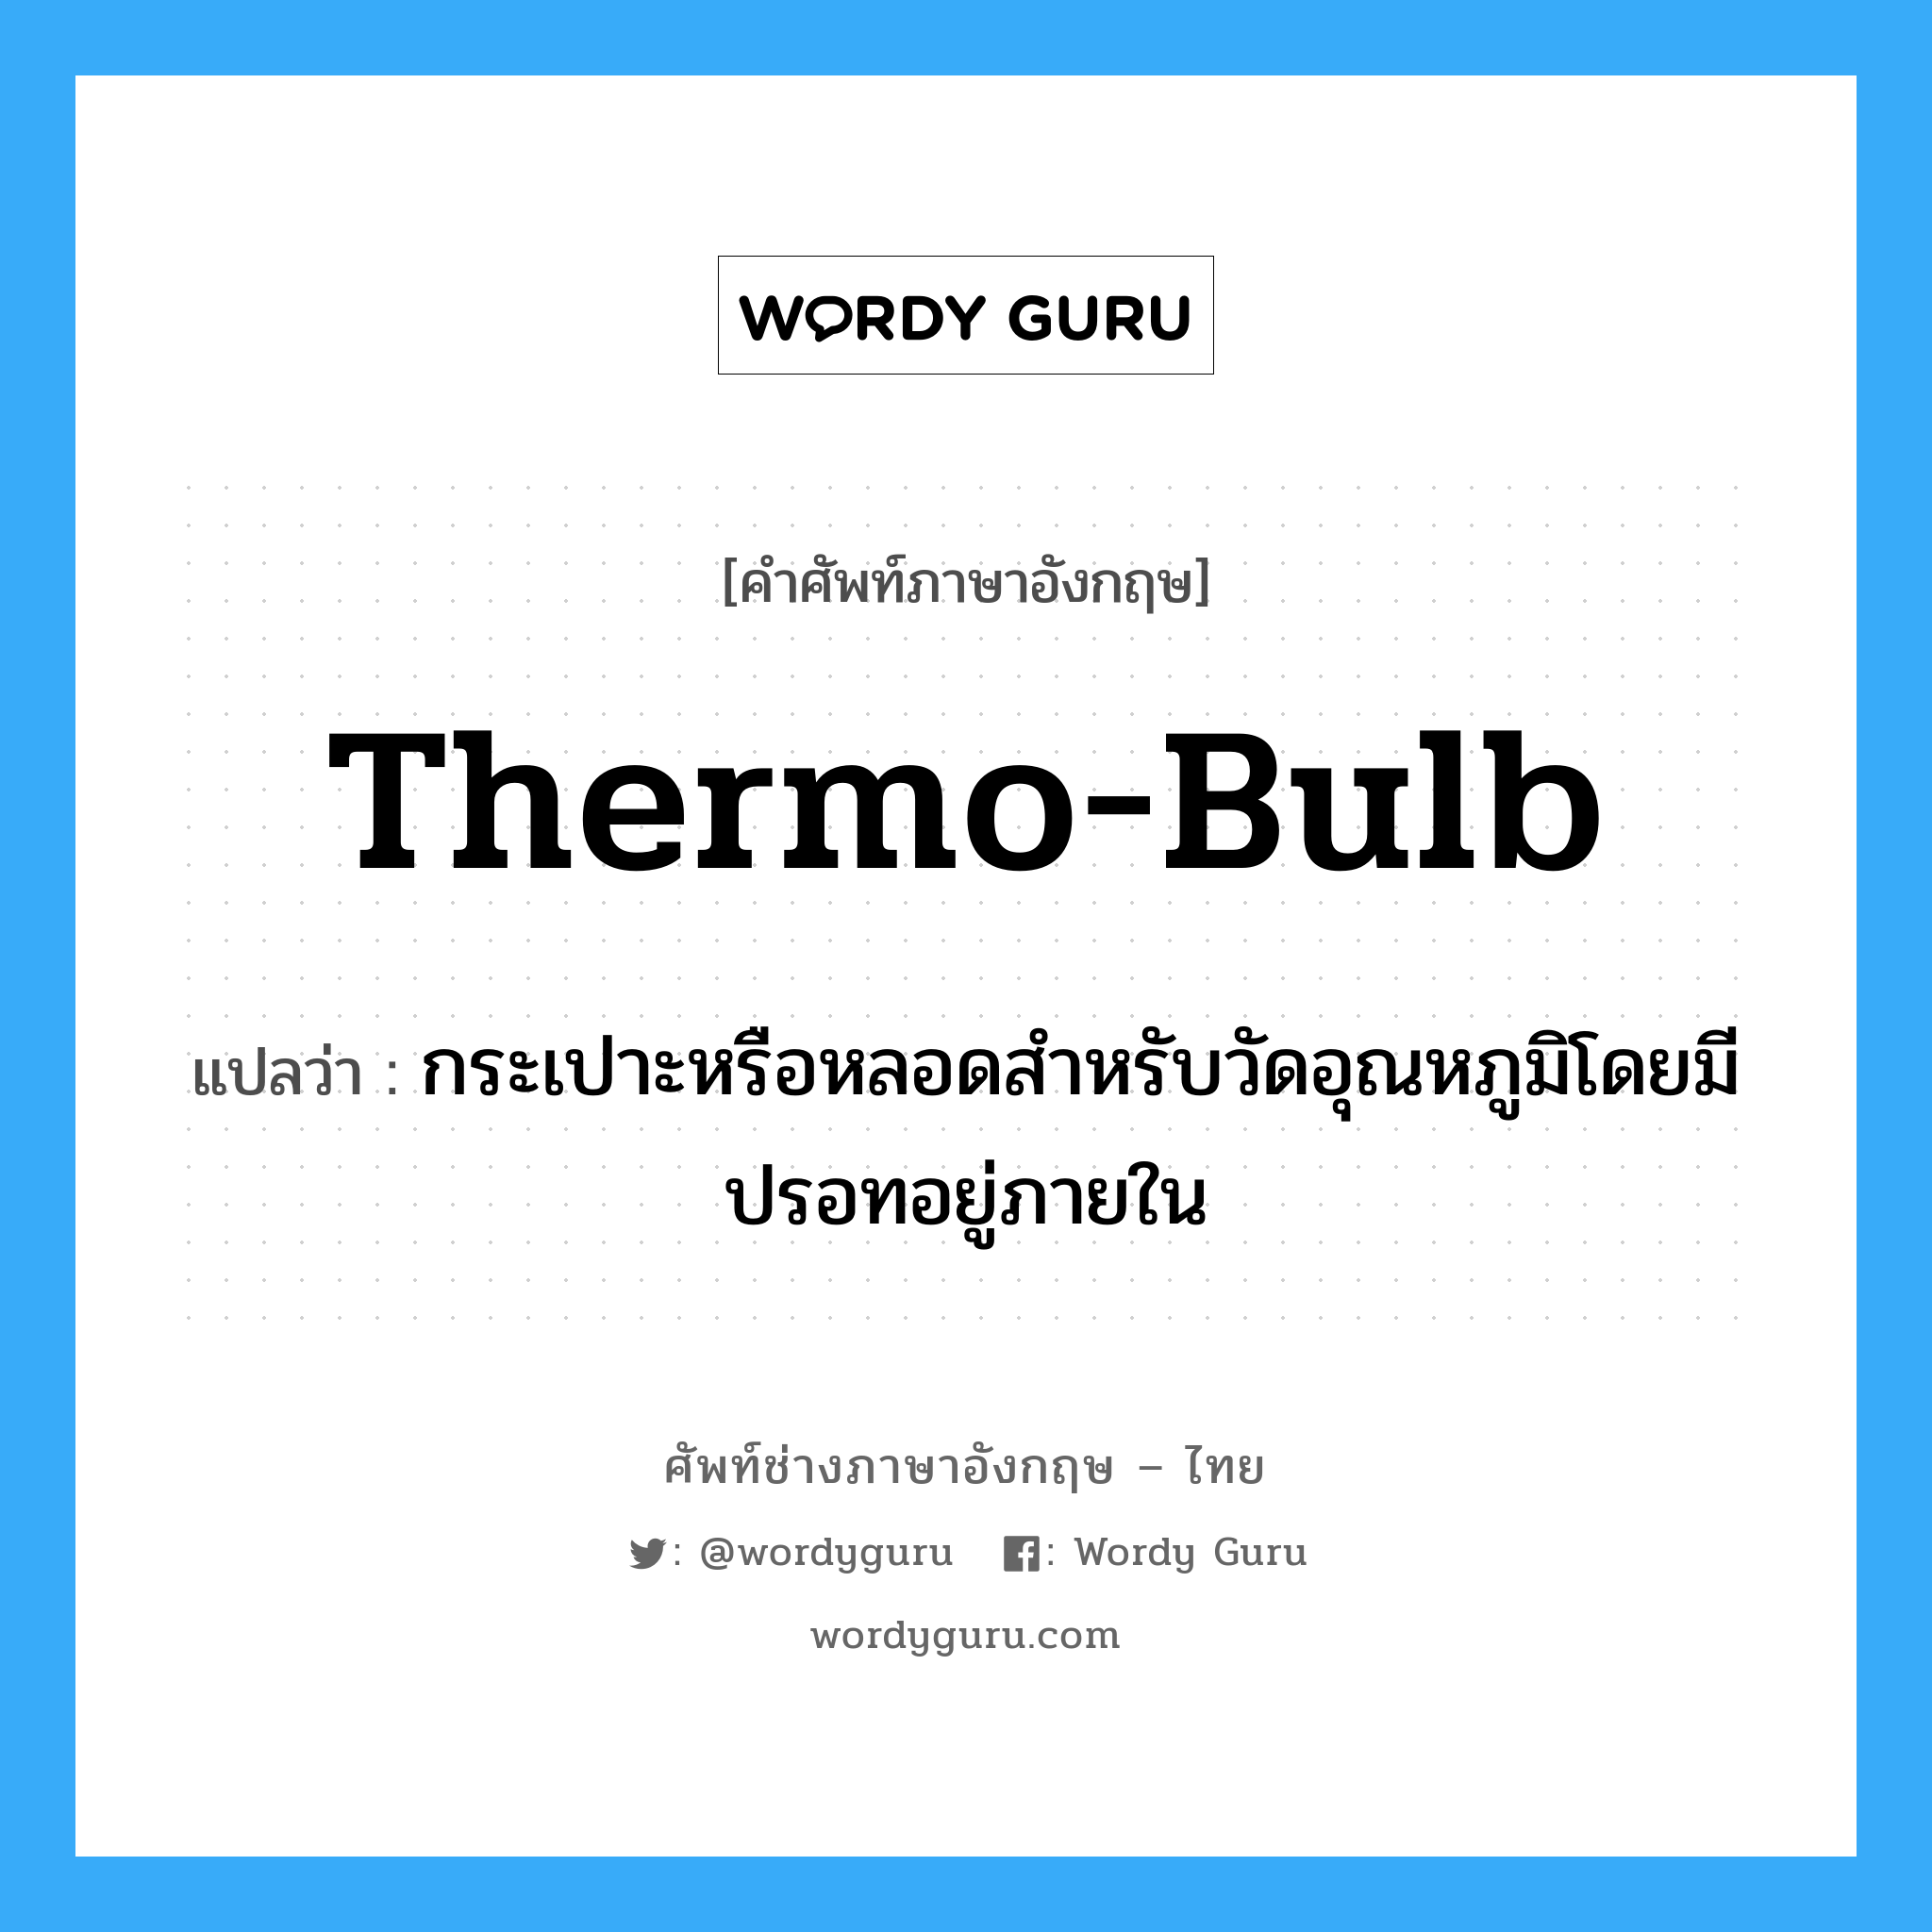 thermo-bulb แปลว่า?, คำศัพท์ช่างภาษาอังกฤษ - ไทย thermo-bulb คำศัพท์ภาษาอังกฤษ thermo-bulb แปลว่า กระเปาะหรือหลอดสำหรับวัดอุณหภูมิโดยมีปรอทอยู่ภายใน